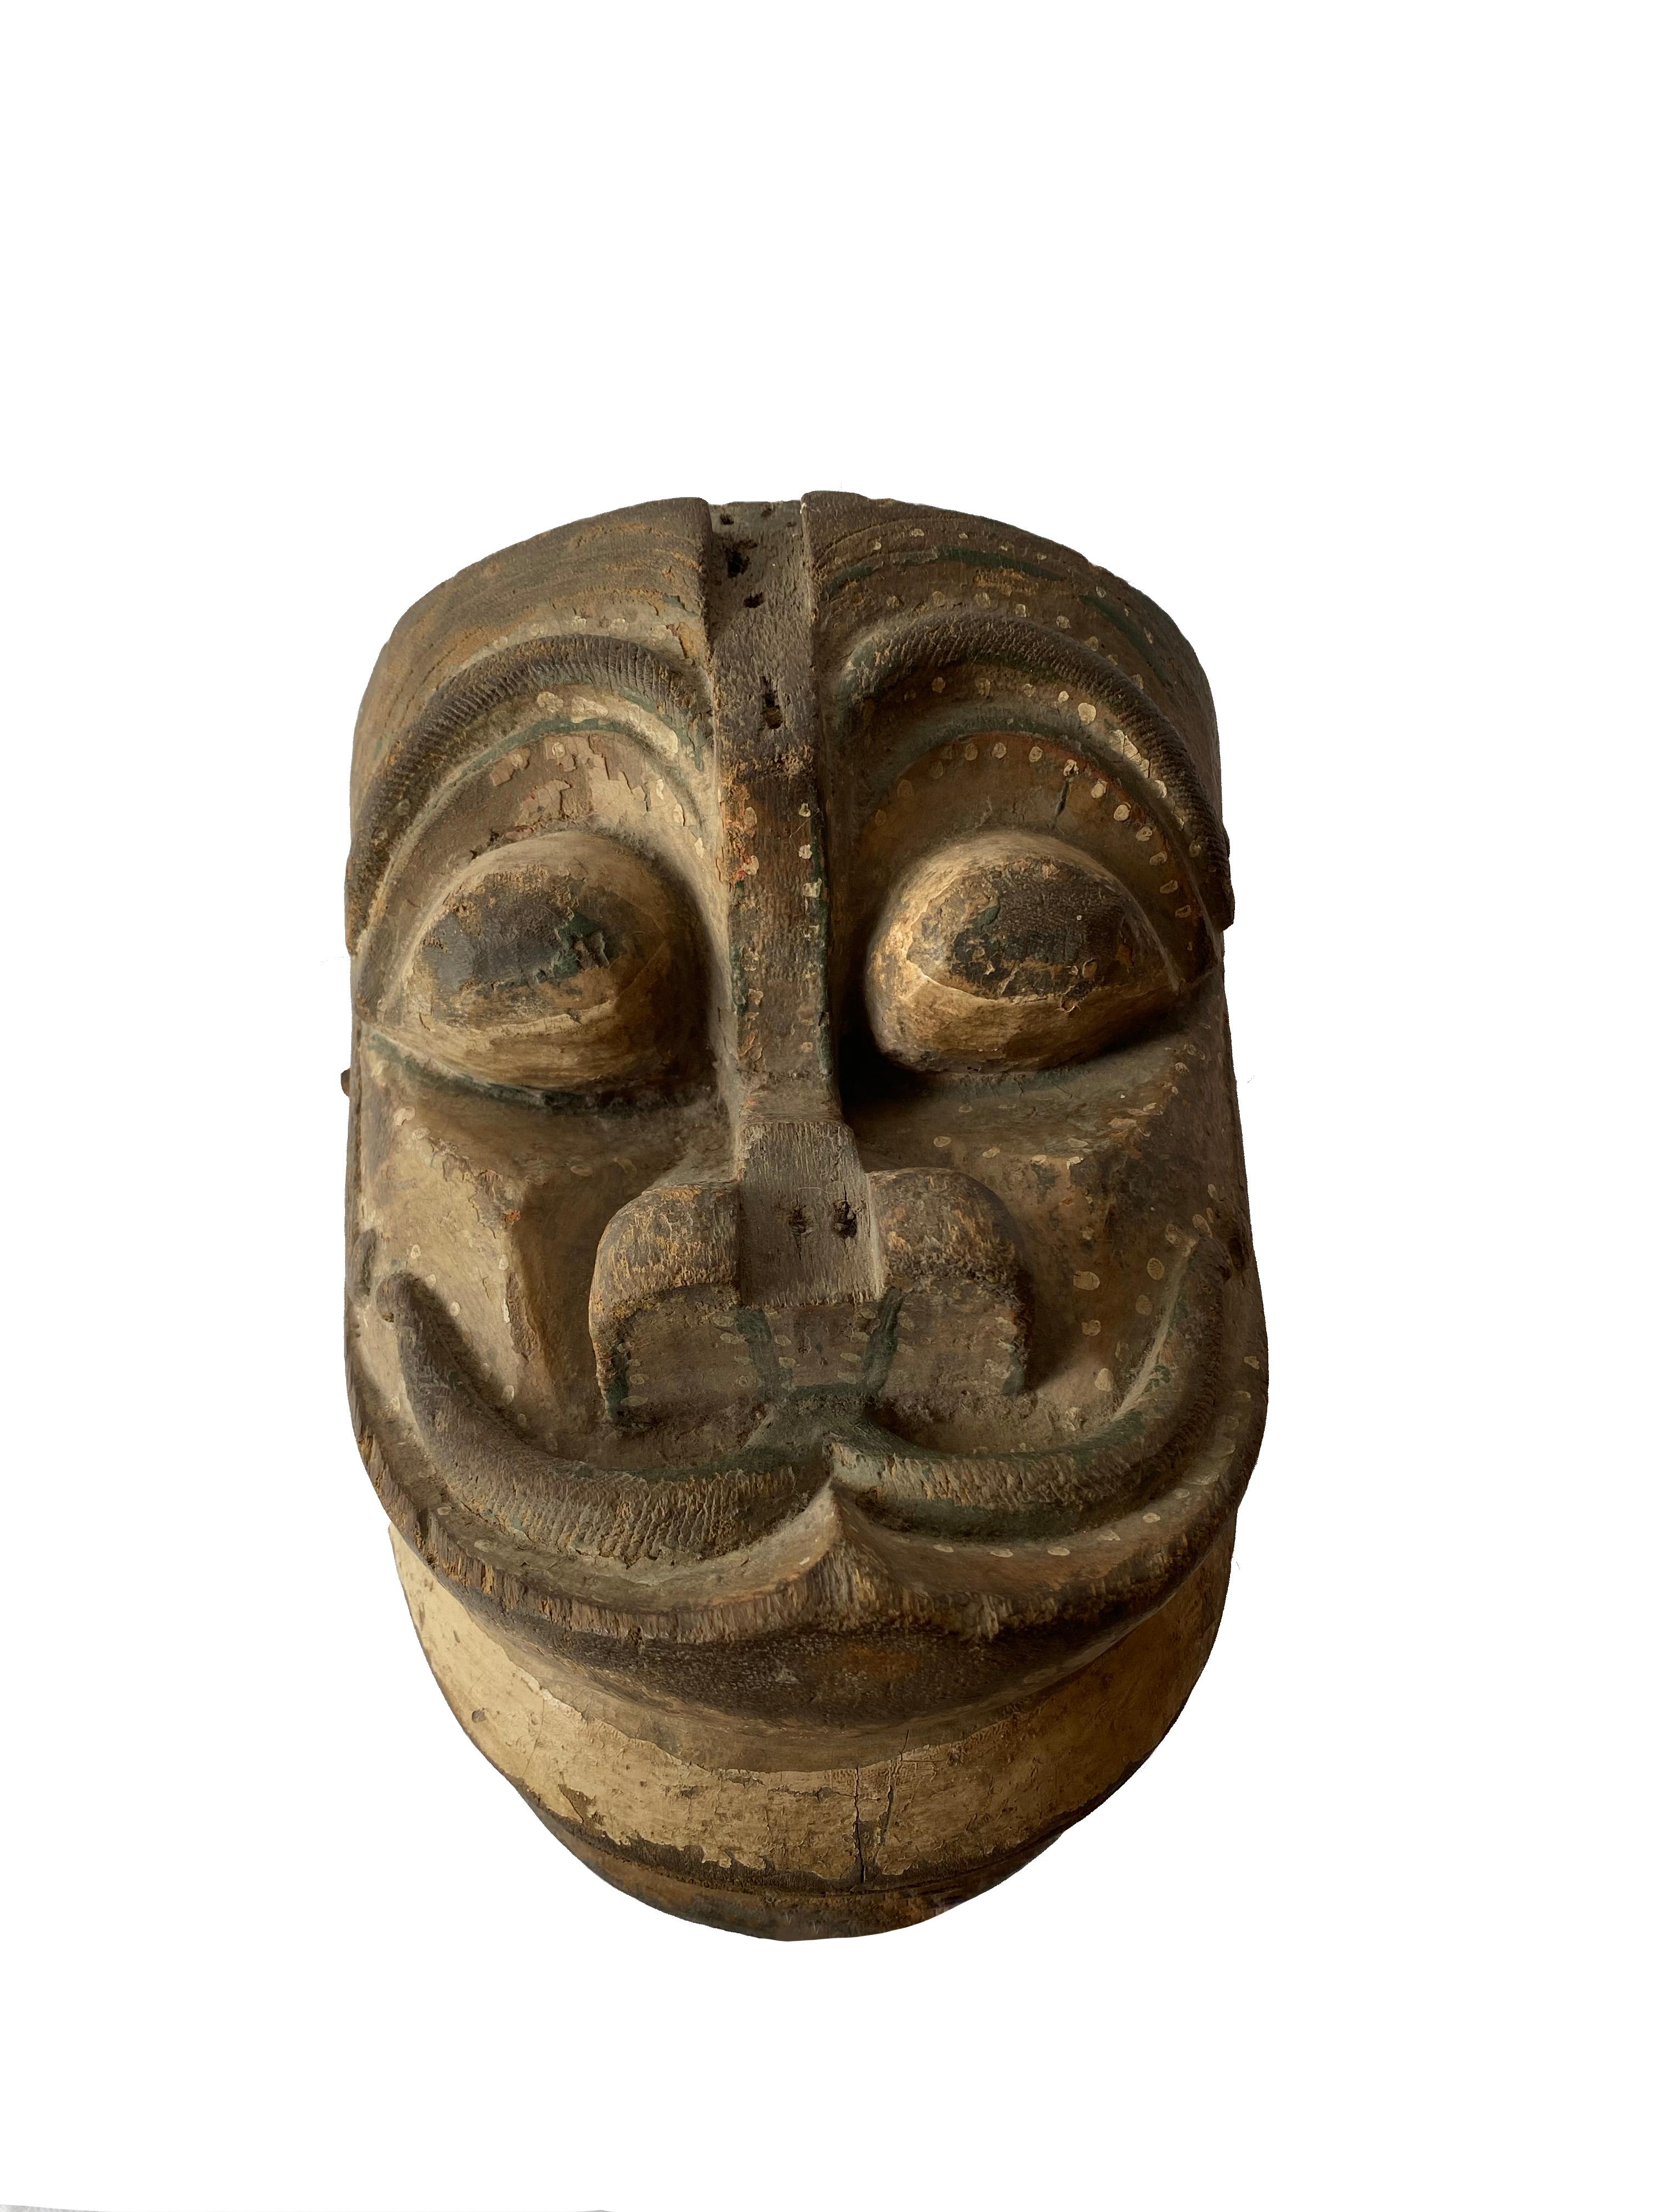 Diese Maske aus Java stellt ein Fabelwesen dar, das bei Wayang-Topeng-Tanzaufführungen verwendet wurde. Sie verfügt über Griffe zum Öffnen und Schließen des Mauls und eine Mischung aus weißer, dunkelgrüner und schwarzer Polychromie. 

  